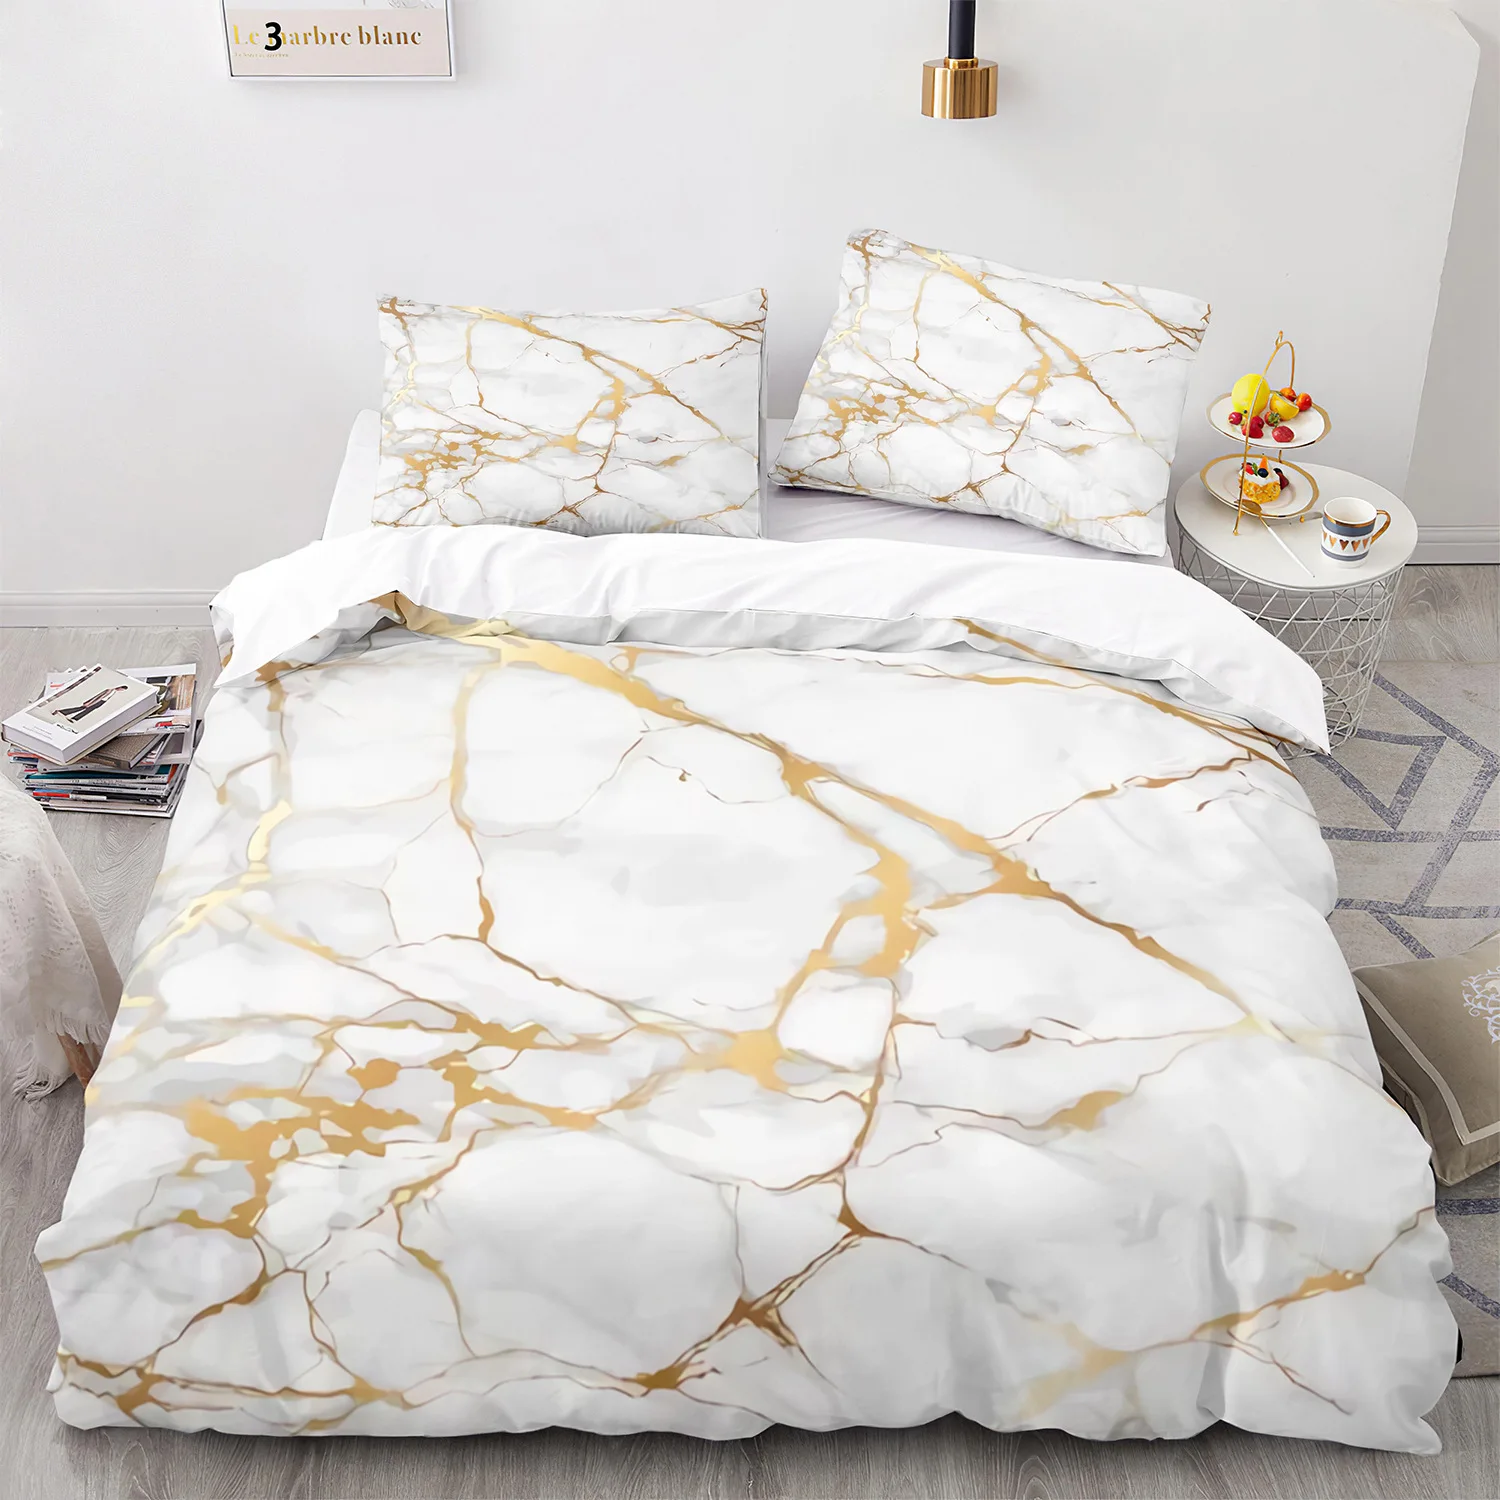 

Комплект постельного белья из полиэстера, с рисунком под мрамор, абстрактная текстура, размеры King/Queen